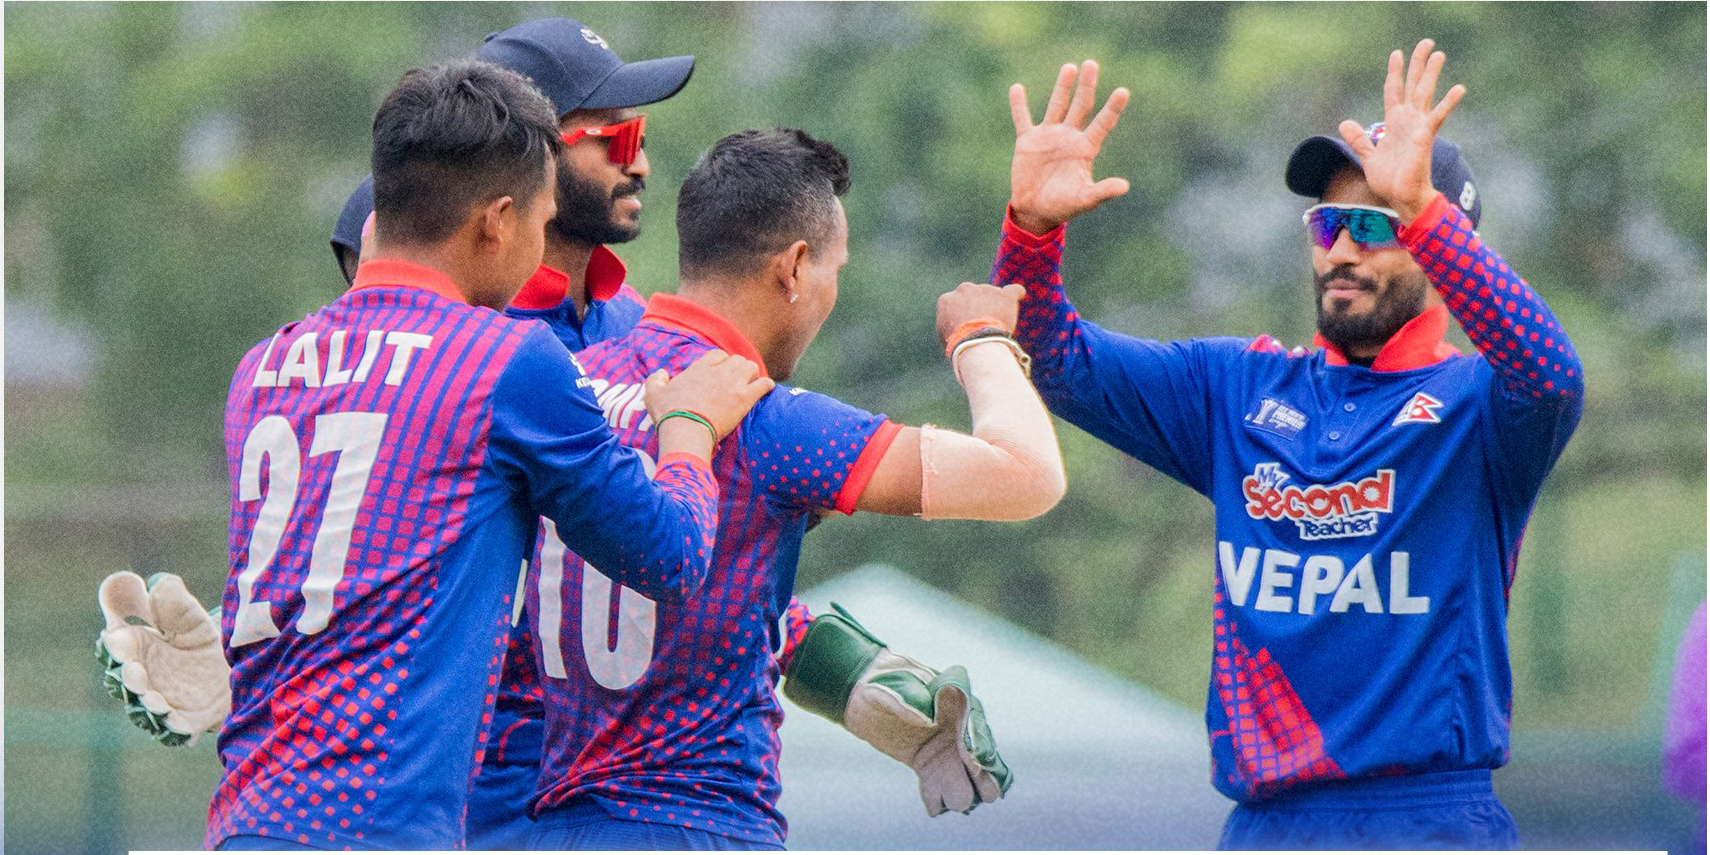 Sandeep Lamichhane shines as Nepal defeats Qatar by 68 runs